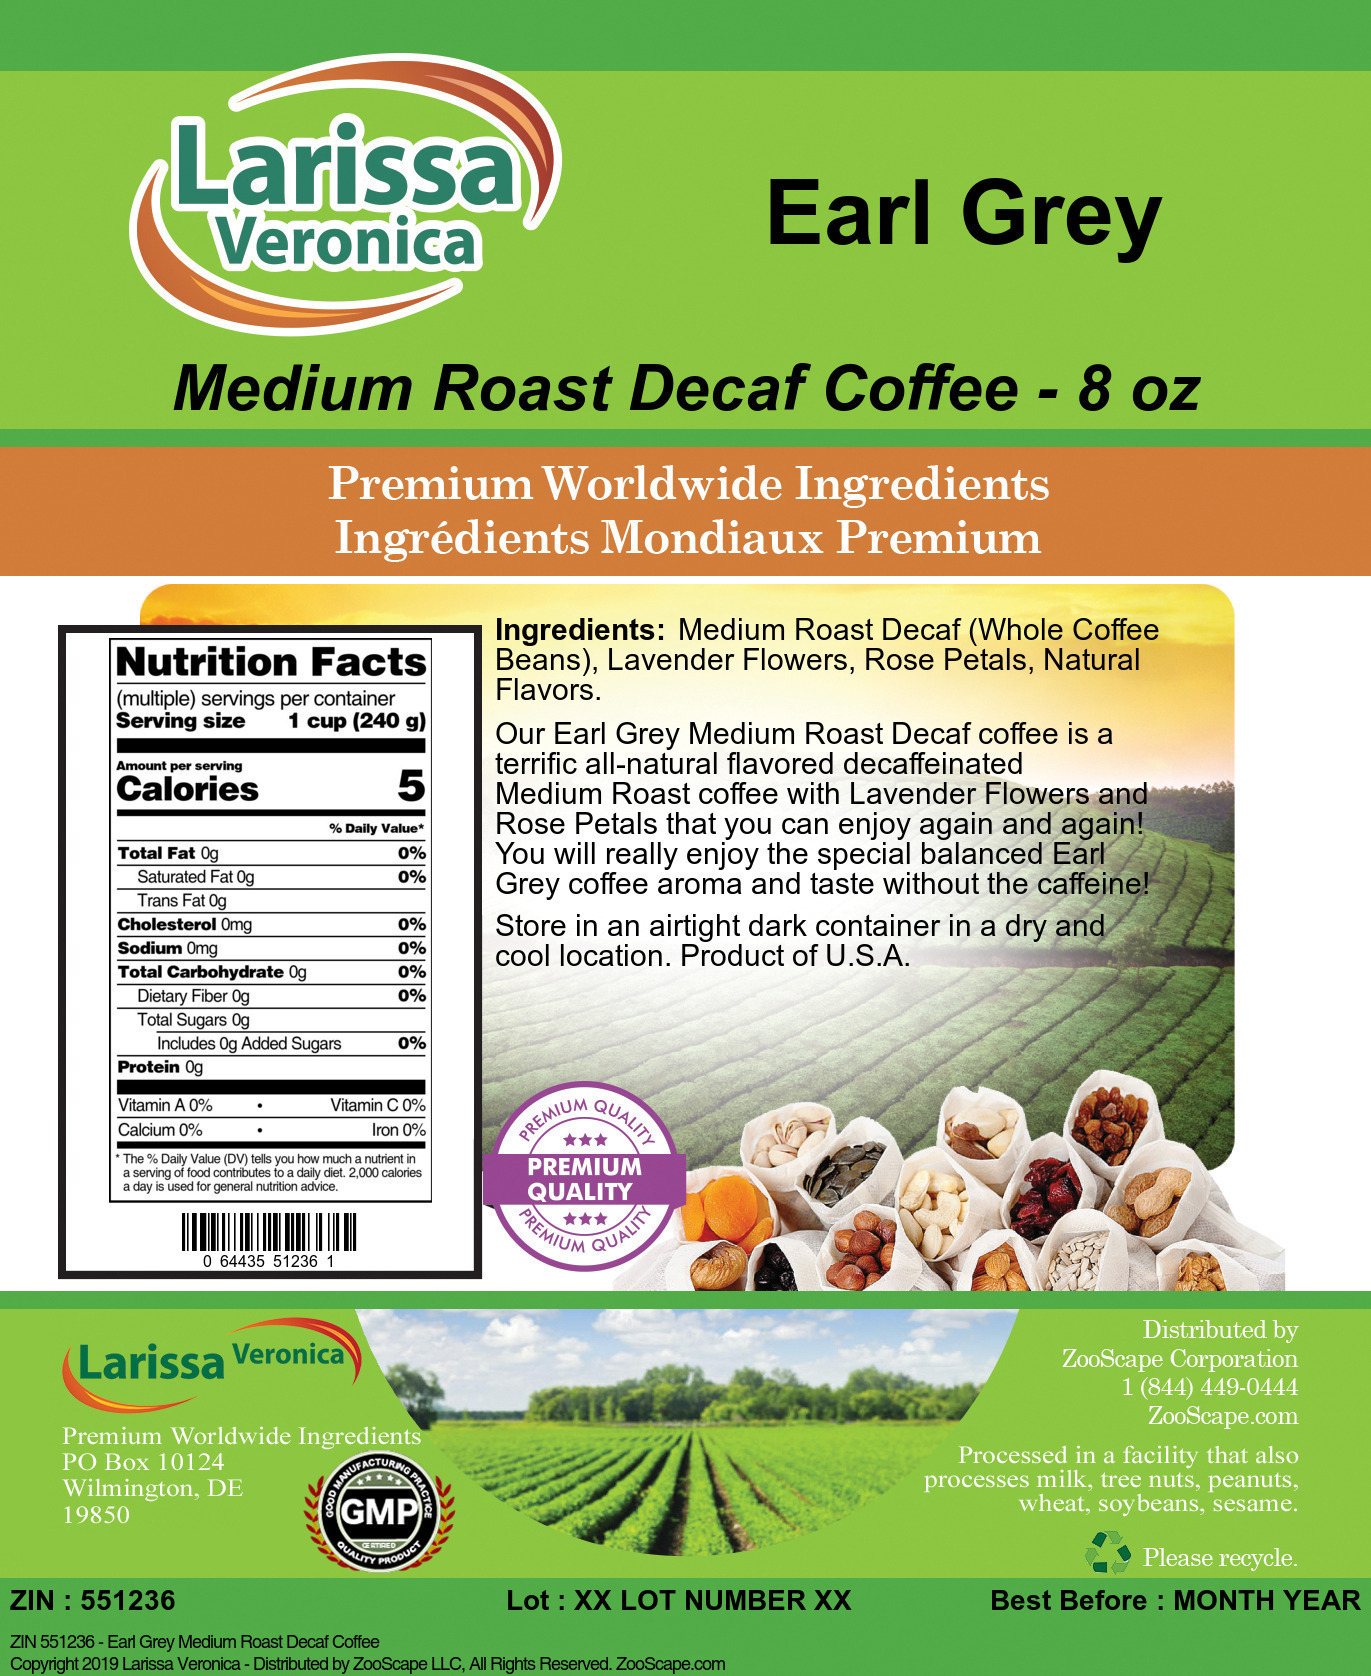 Earl Grey Medium Roast Decaf Coffee - Label